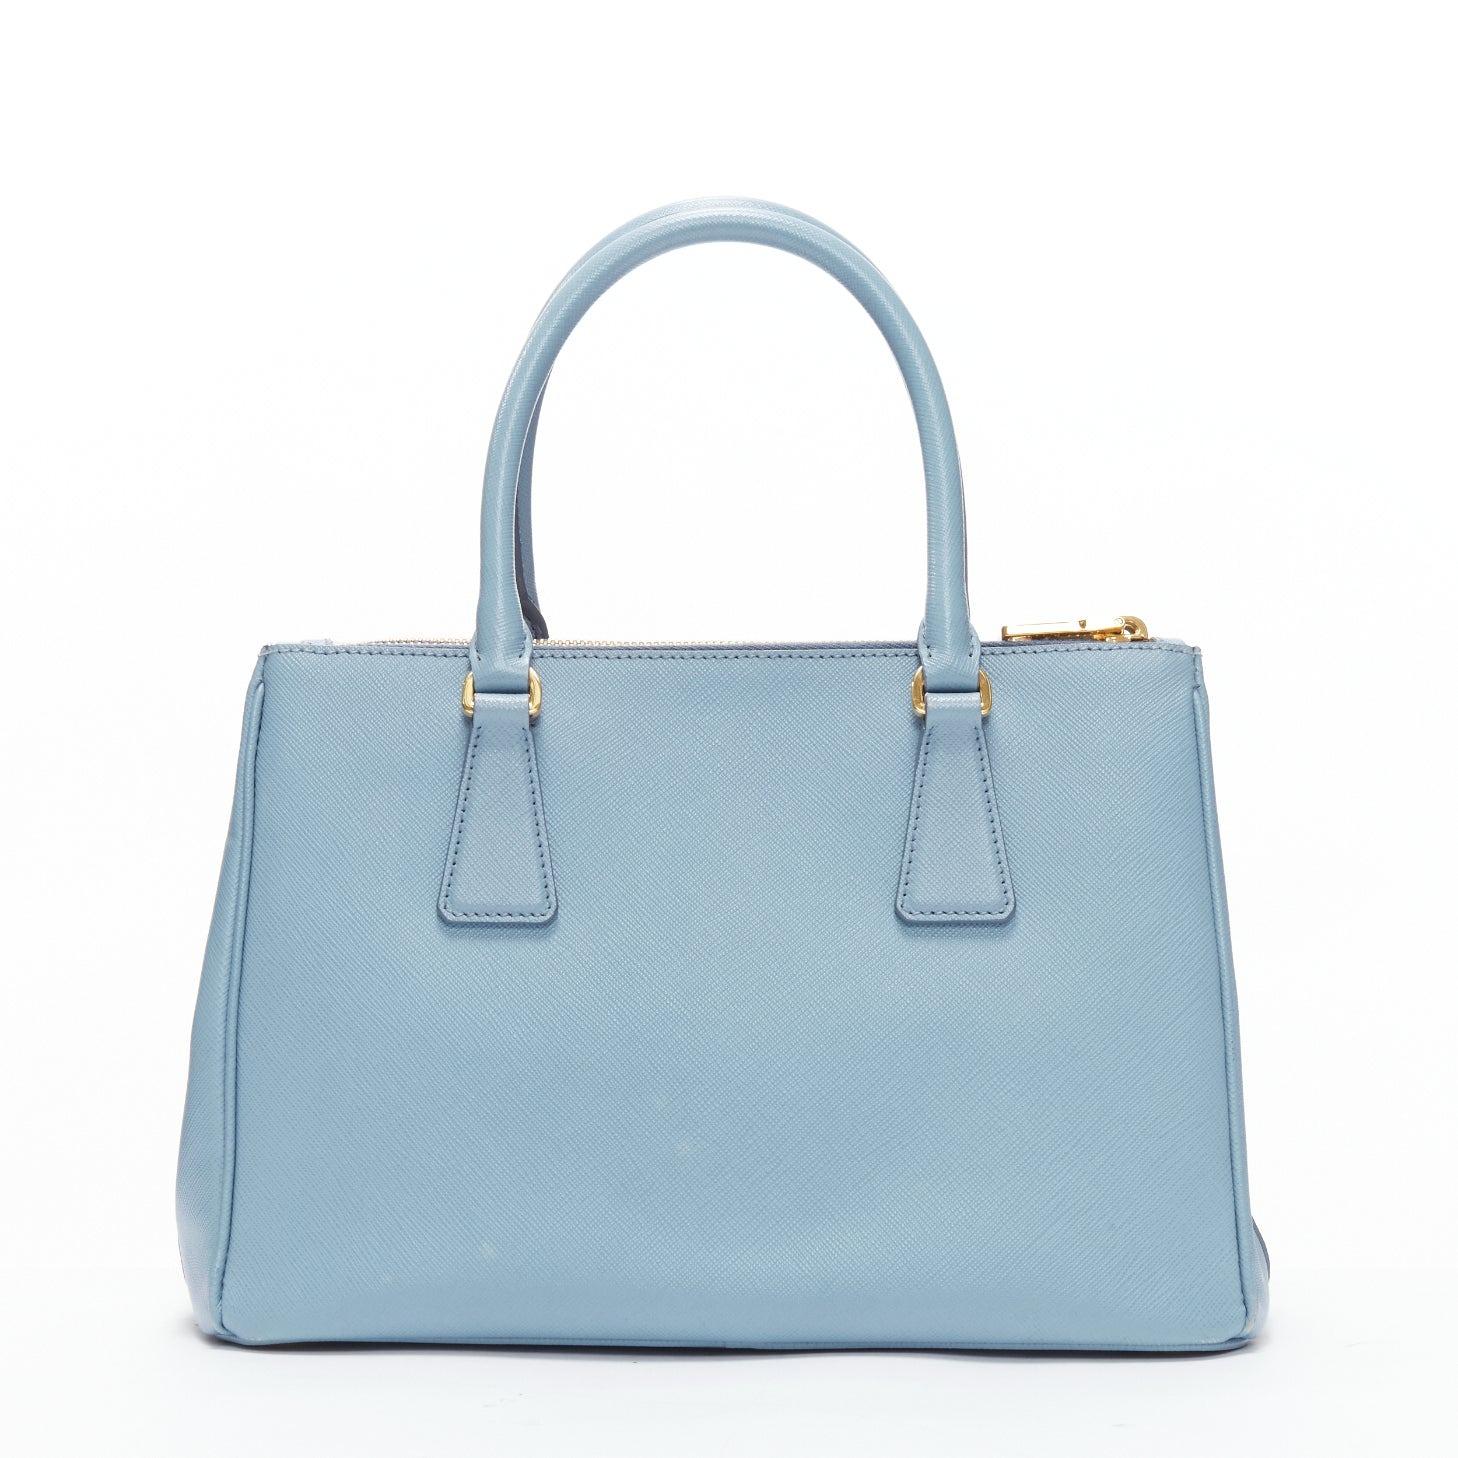 PRADA Galleria light blue saffiano leather triangle logo shoulder tote bag 1